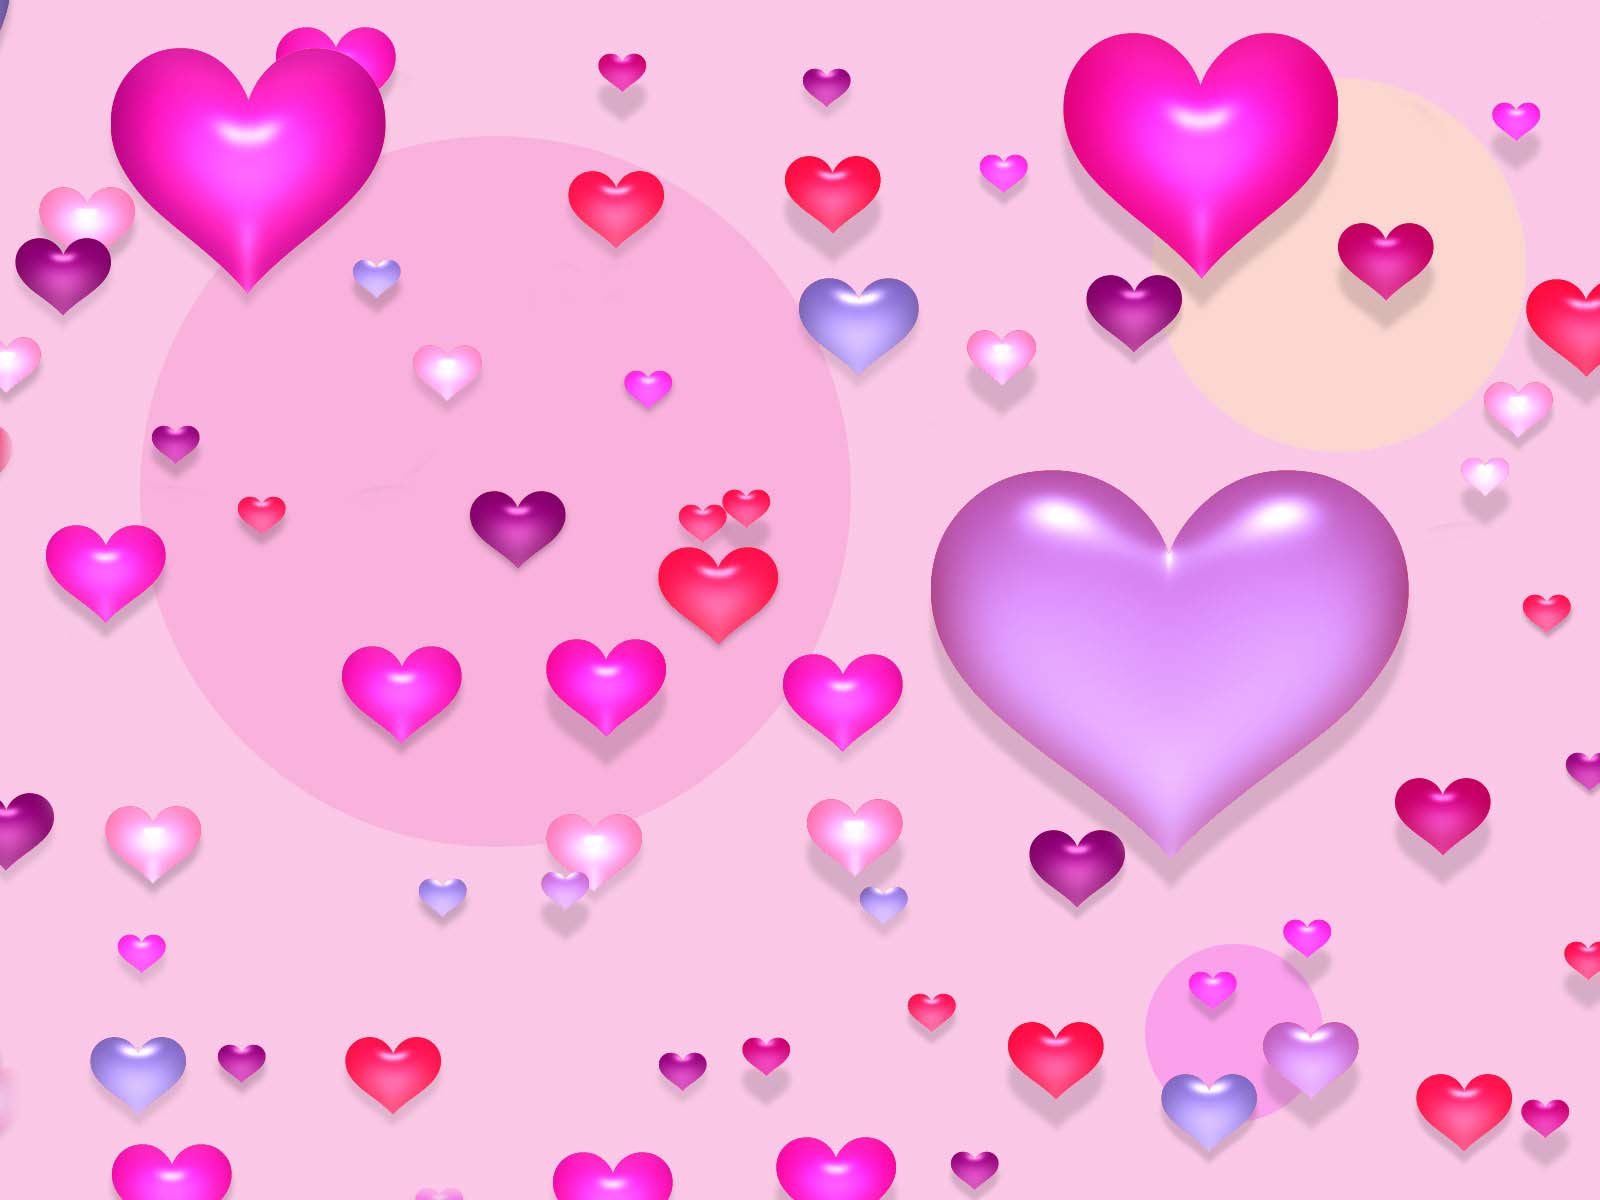 cute love wallpaper for whatsapp - Clip Art Library